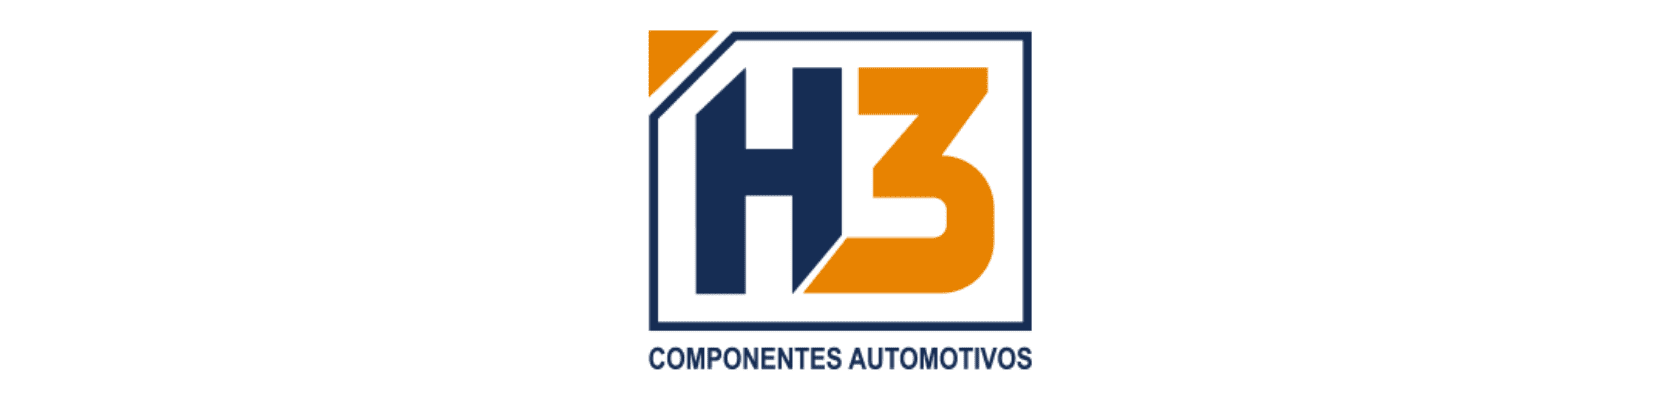 H3 Componentes